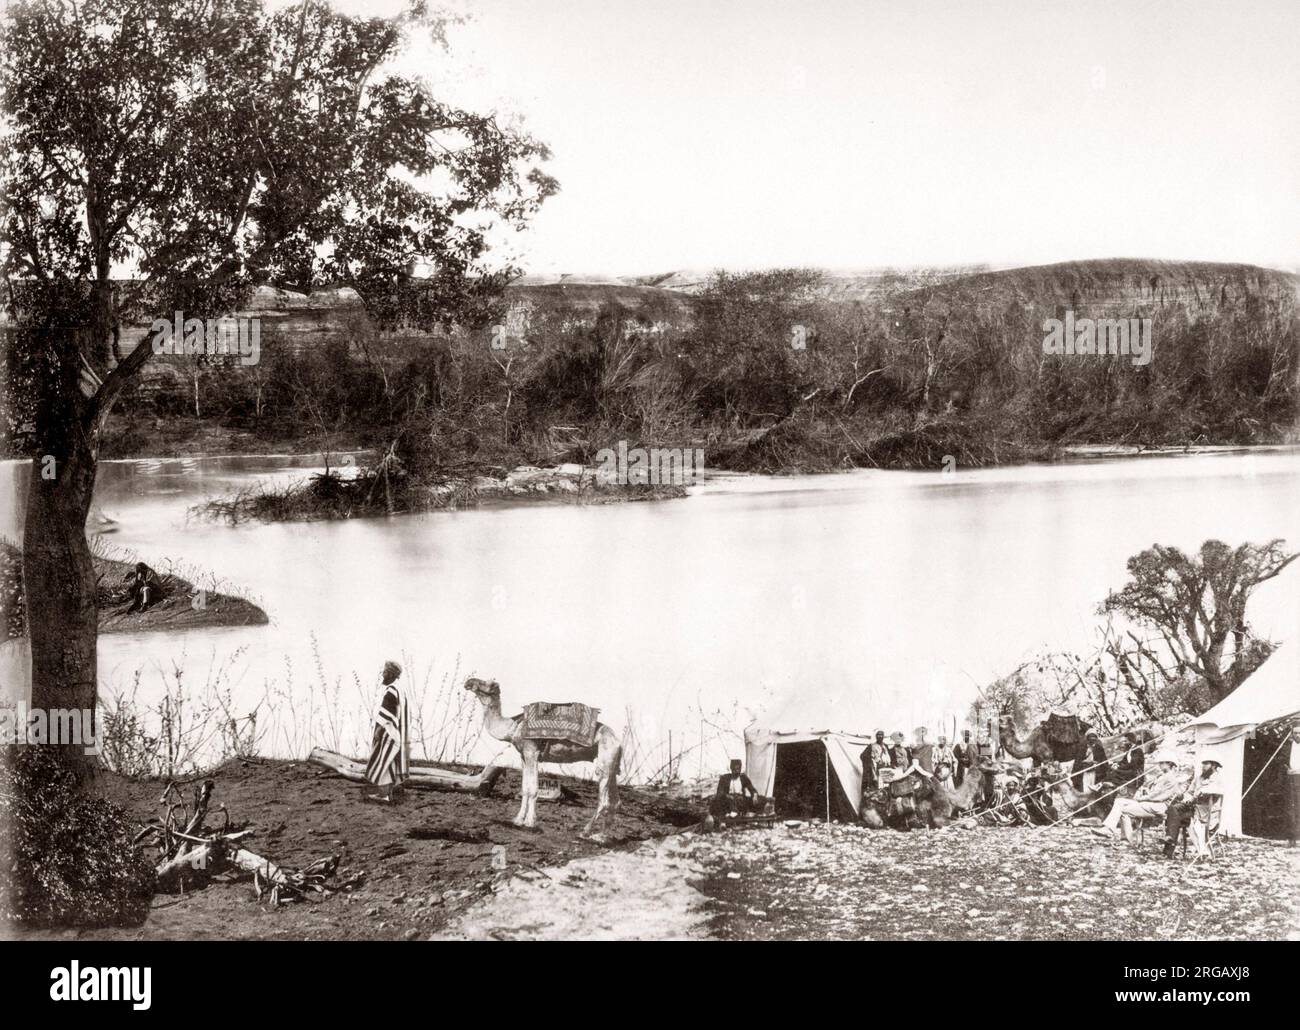 Chrisitan groupe de pèlerins sur les rives du Jourdain, c.1890 Banque D'Images